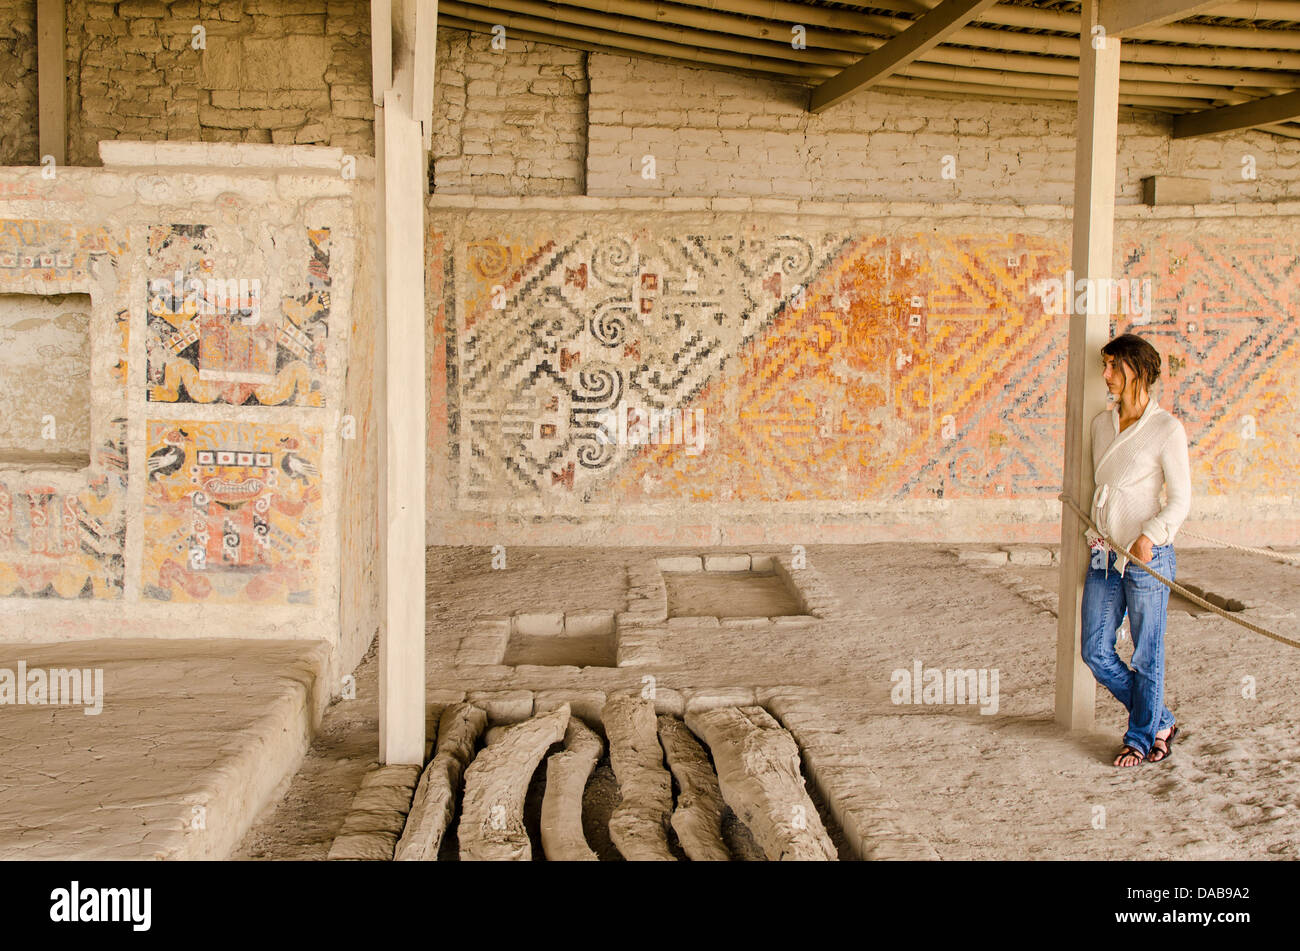 Antica pre colombiana petrogylphs rilievi dipinti murali a El Brujo complesso archeologico rovine rimane vicino a Trujillo, Perú. Foto Stock